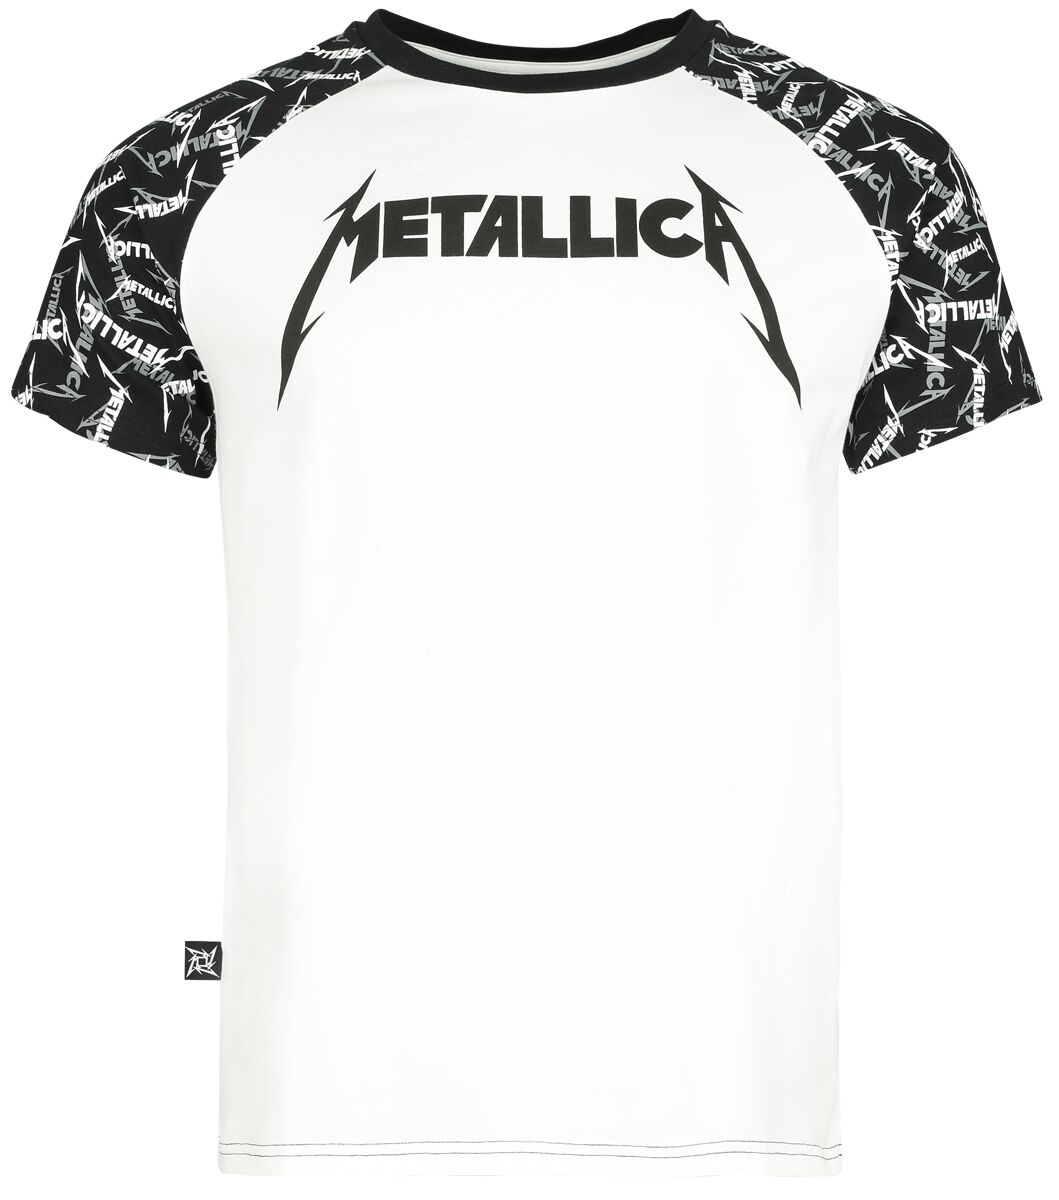 Metallica T-Shirt - EMP Signature Collection - S bis 5XL - für Männer - Größe 3XL - weiß/schwarz  - EMP exklusives Merchandise!